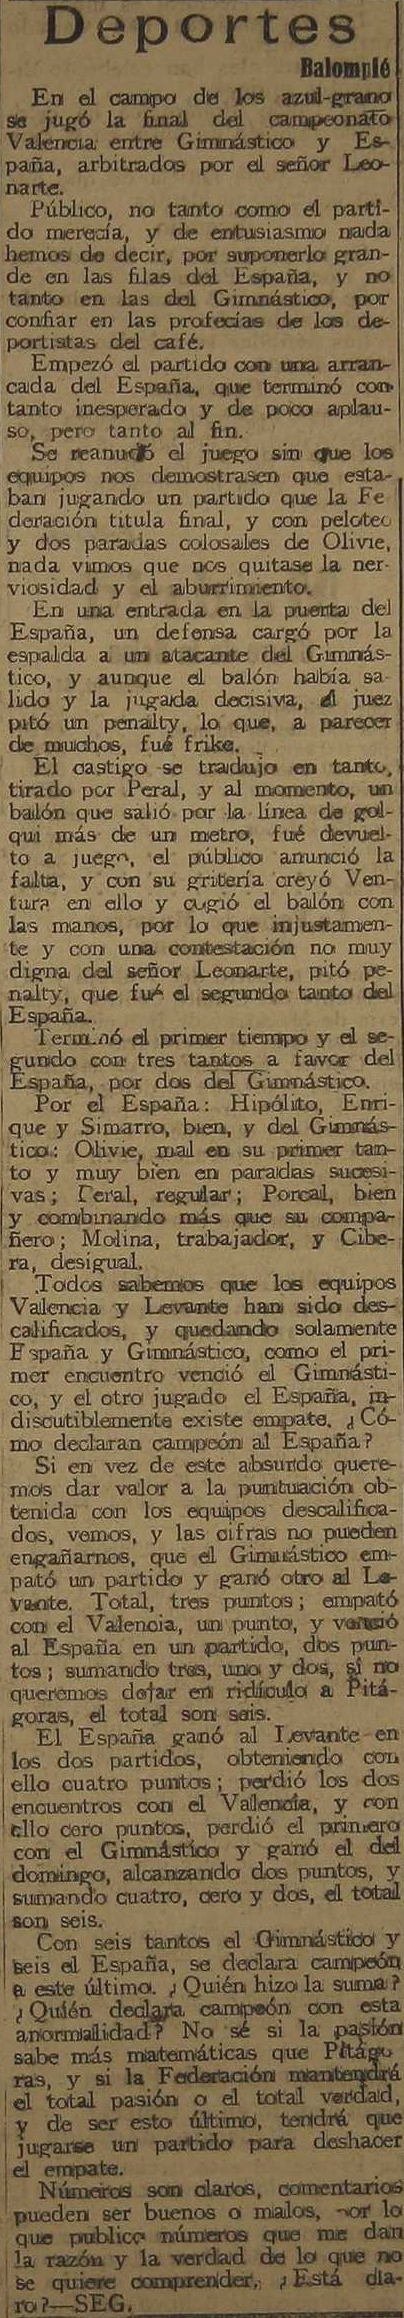 1922.01.29 (29 января 1922), Эспанья - Гимнастико, 3-2 (1).png